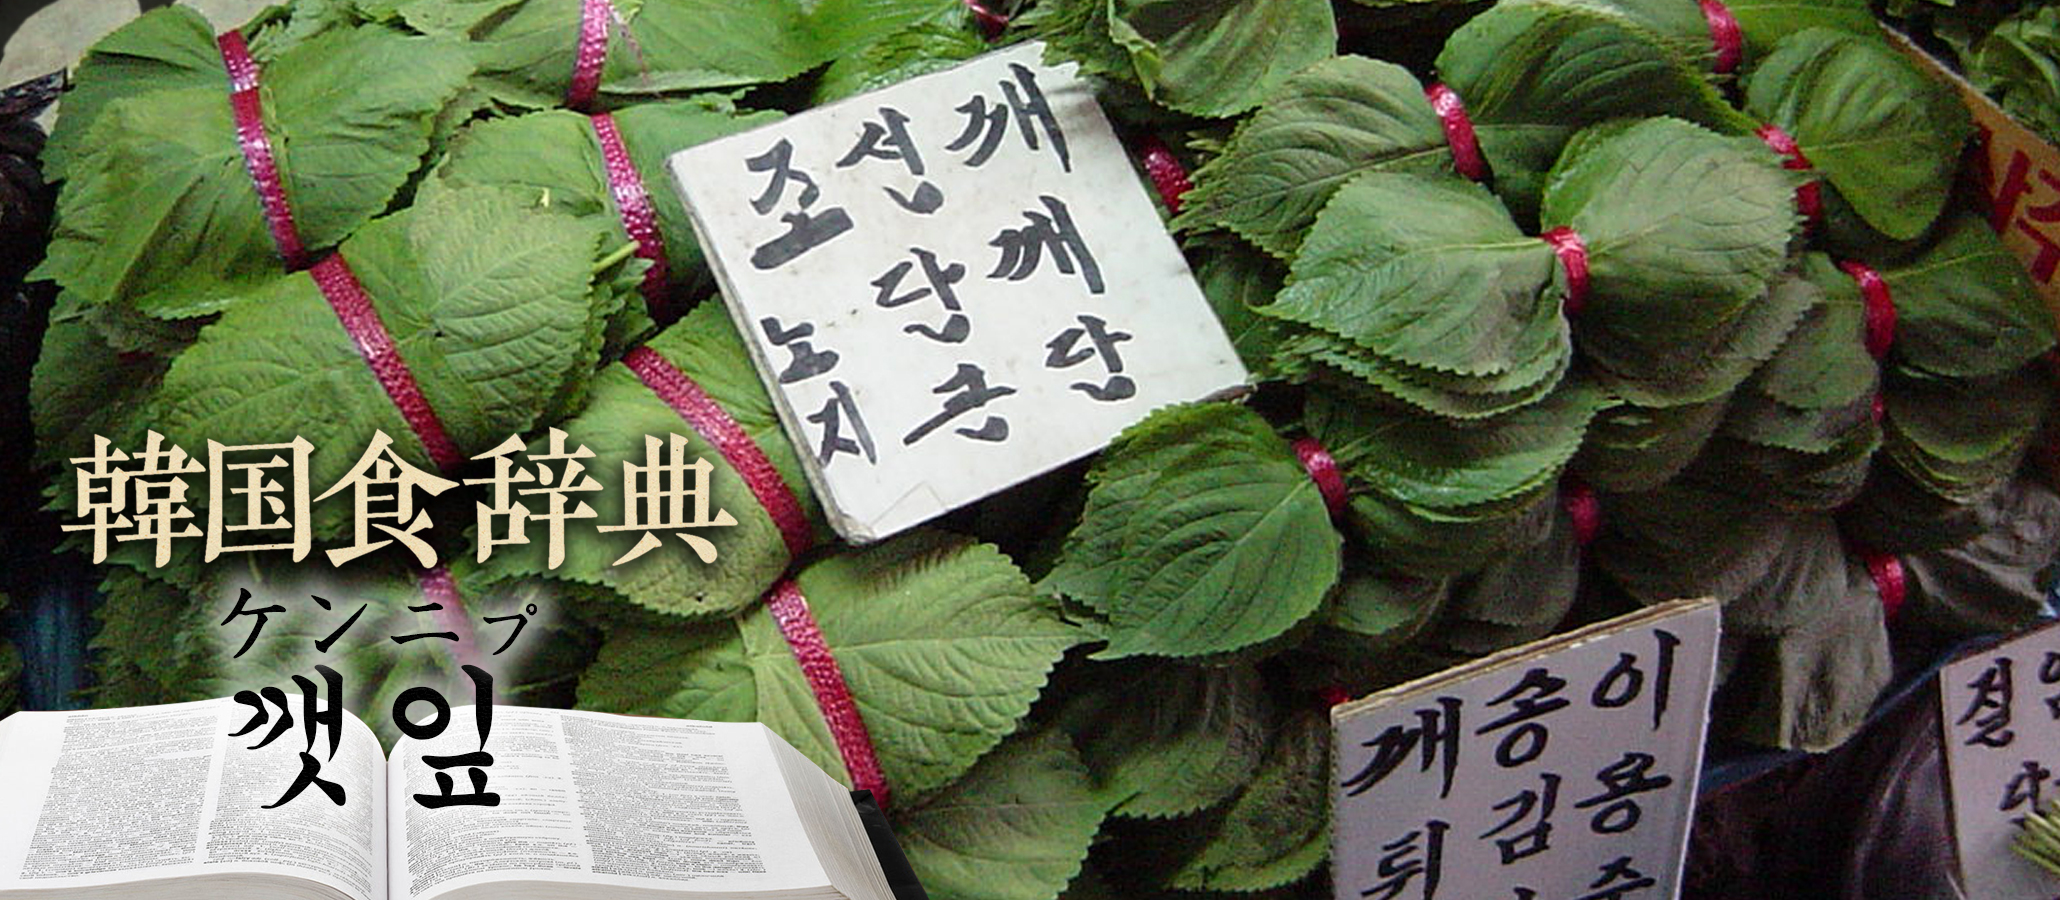 韓国食辞典「えごまの葉」